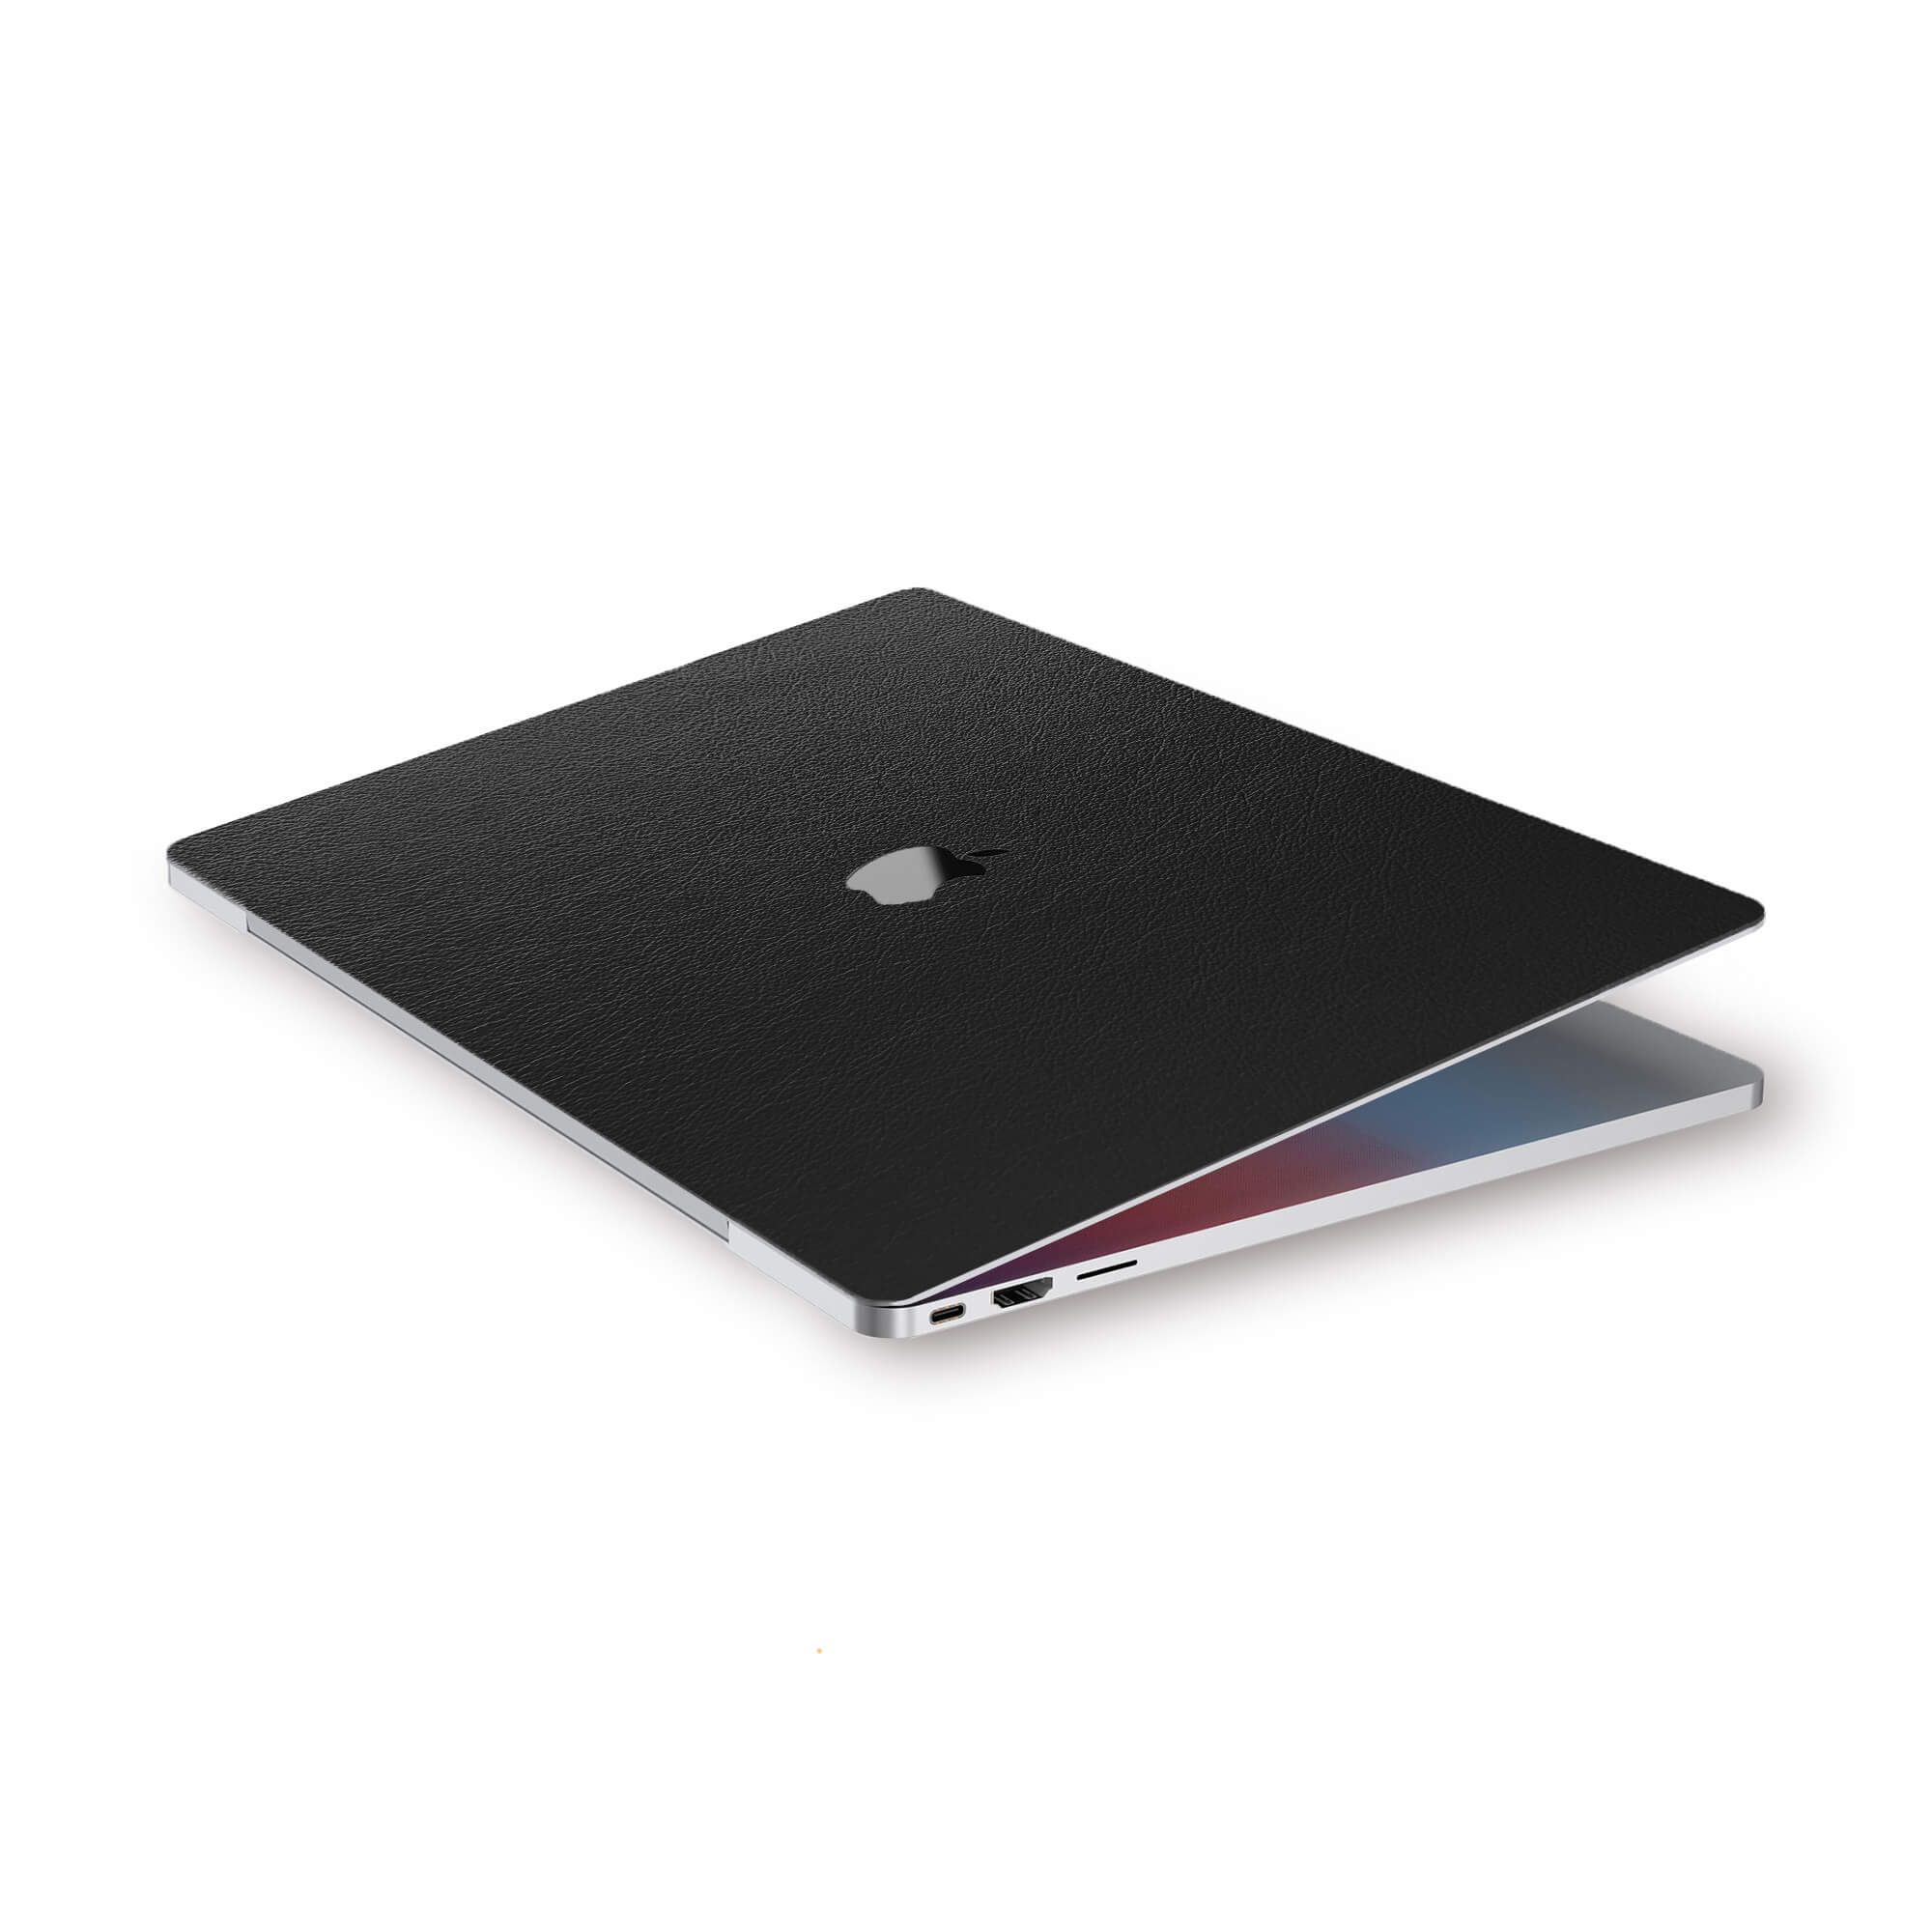 alt:Leather MacBook Skin| var:black |, LBK-MB-Pro16, LBK-MB-Pro15, LBK-MB-Pro1320, LBK-MB-Air20, LBK-MB-Ret15, LBK-MB-Ret13, LBK-MB-Air13, LBK-MB-12